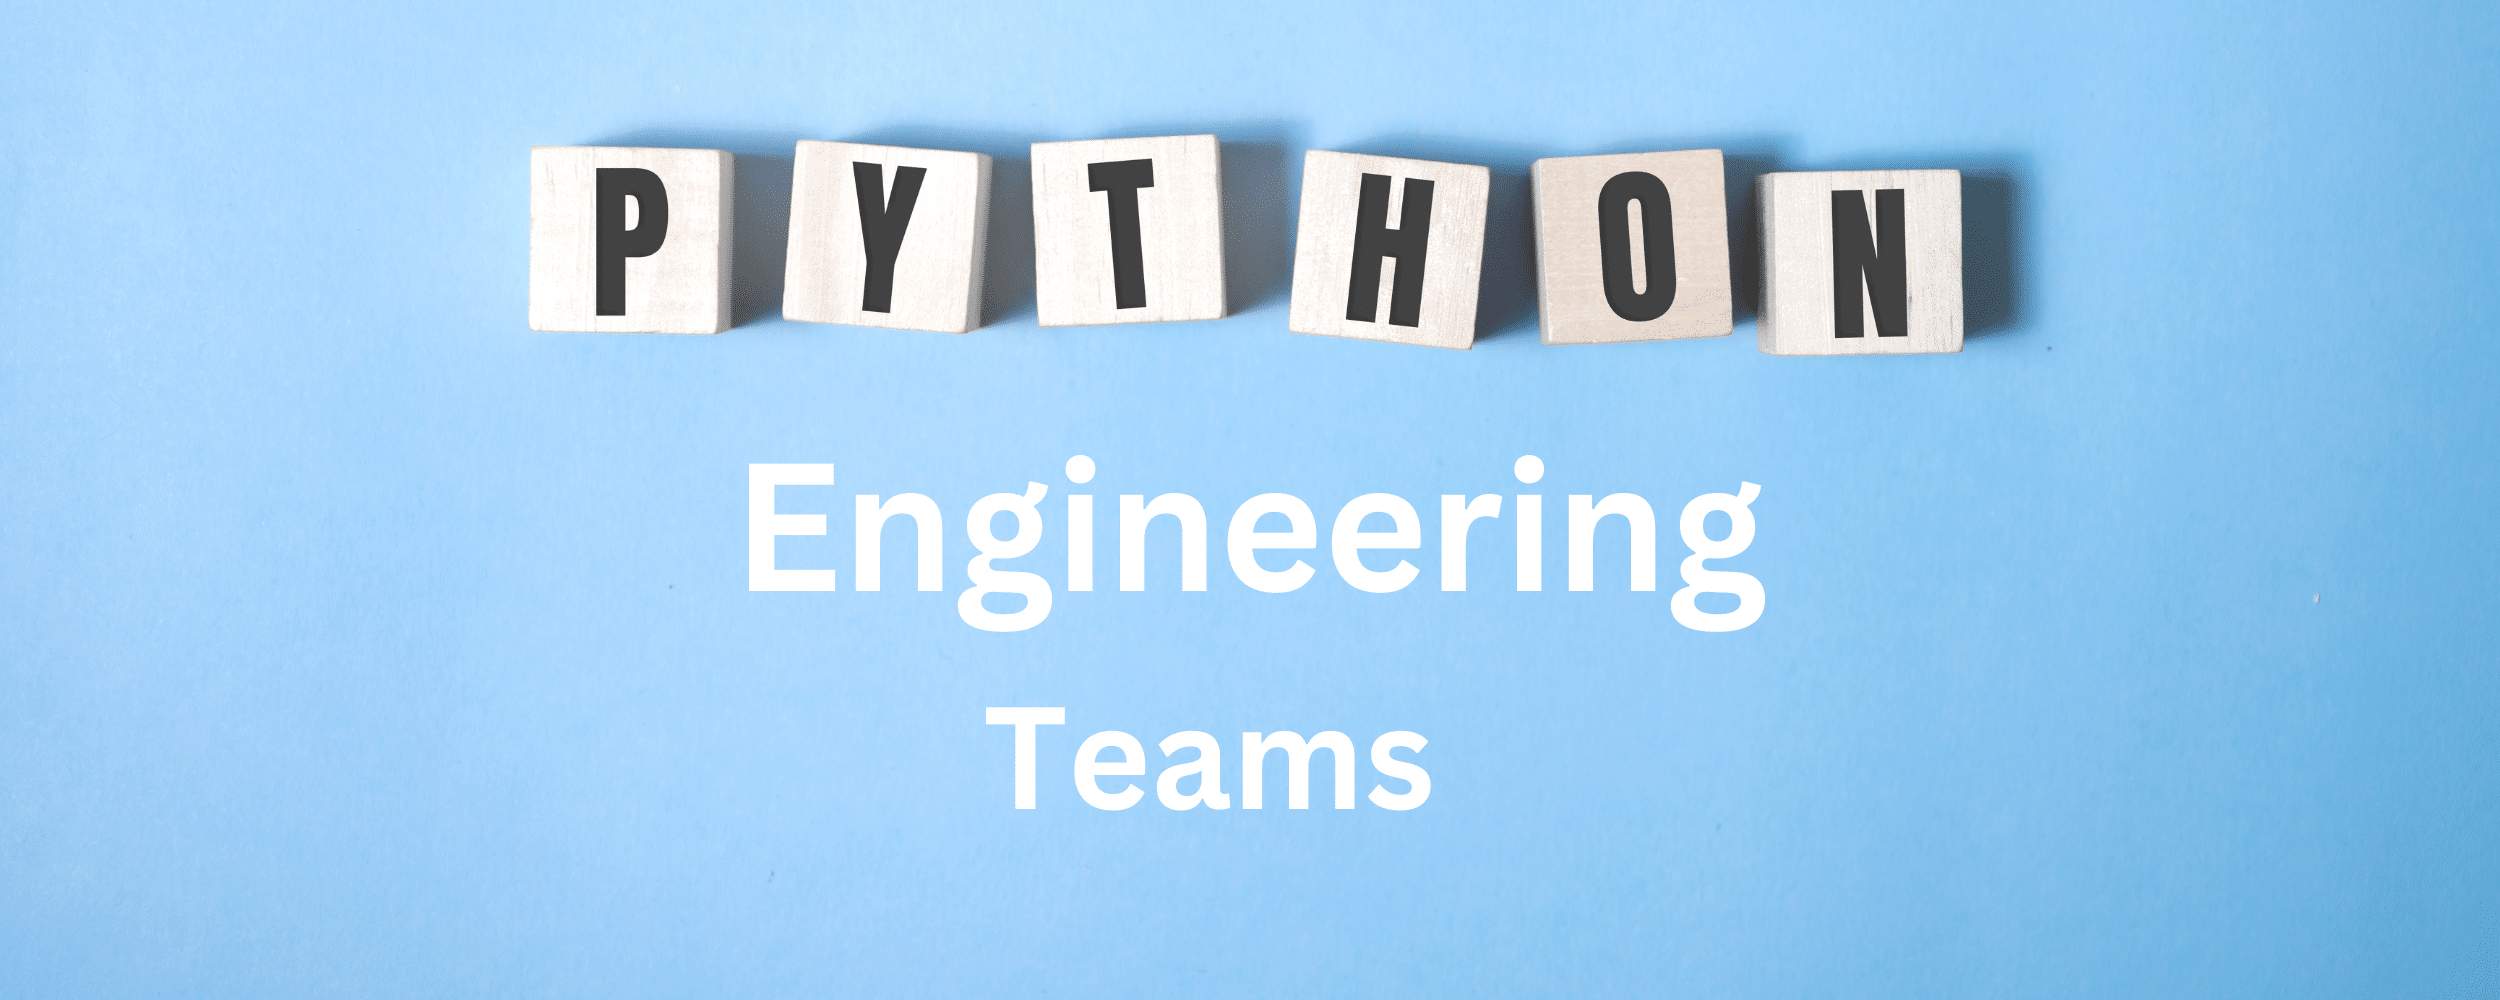 PYTHON Engineer Team